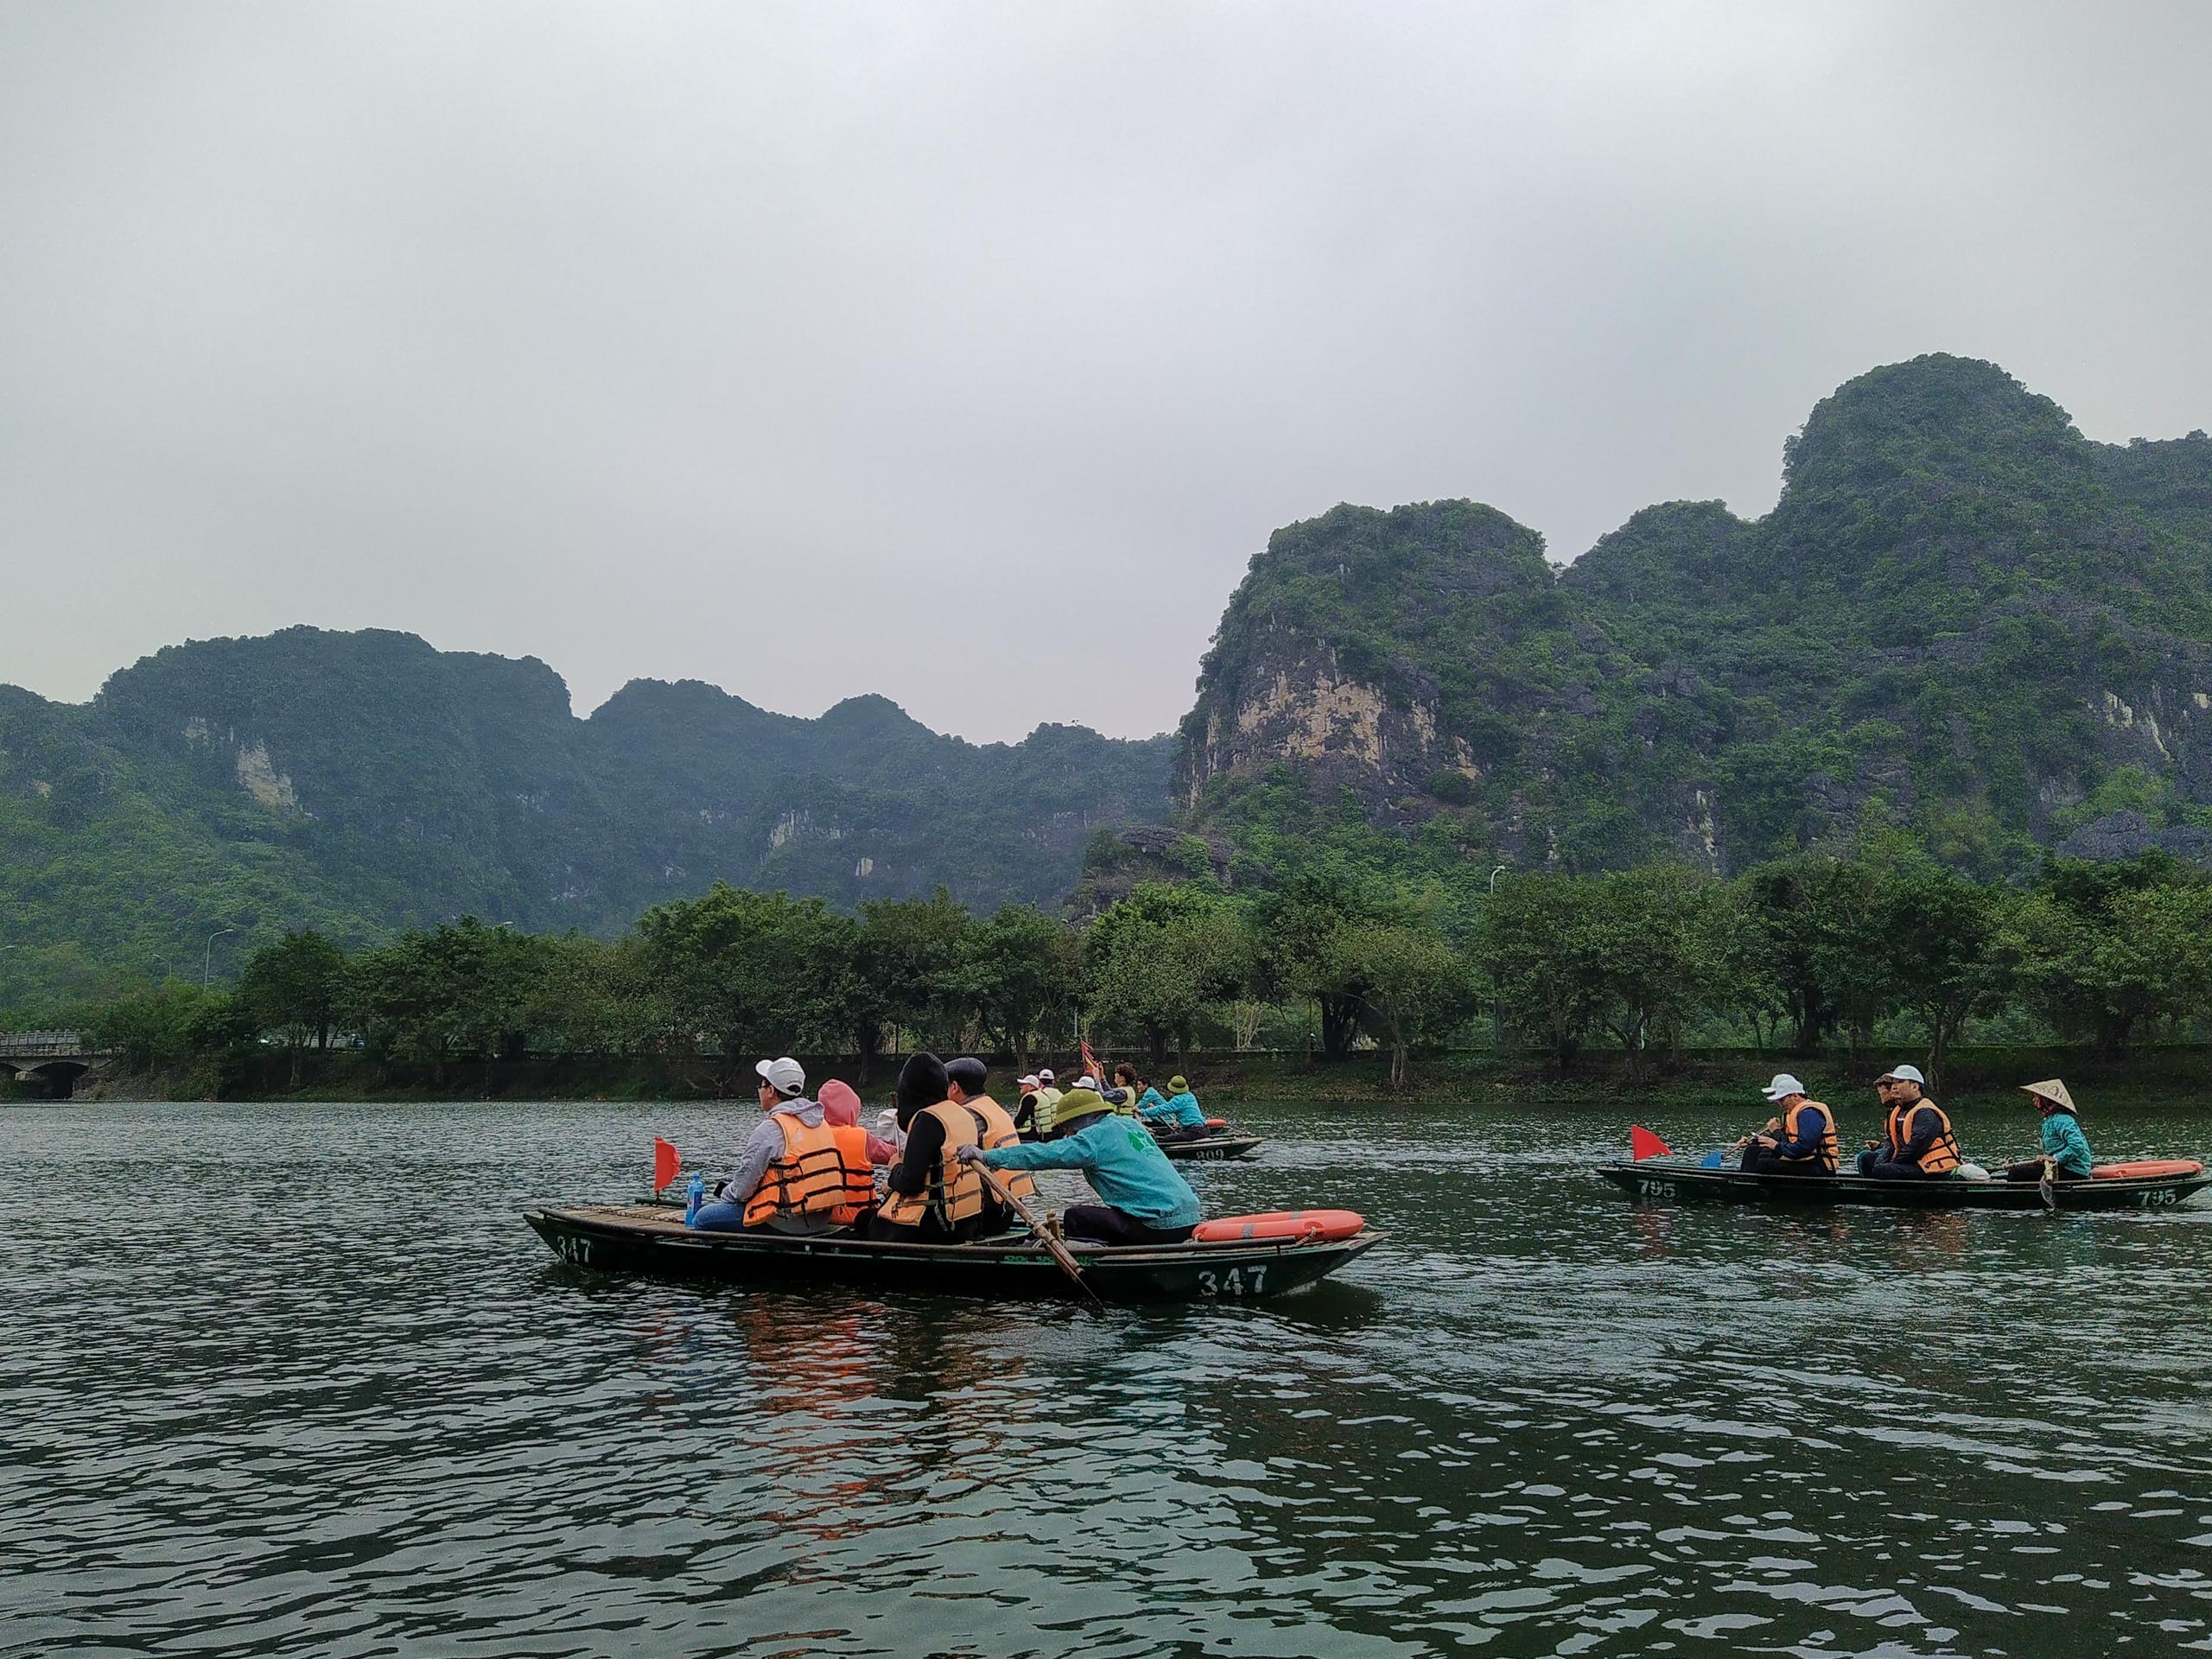 Chuyến đi cuối năm Hoà Bình - Ninh Bình - Hà Nội cùng Nokia 7.2: Nhiều ảnh đẹp và hoạt động ý nghĩa